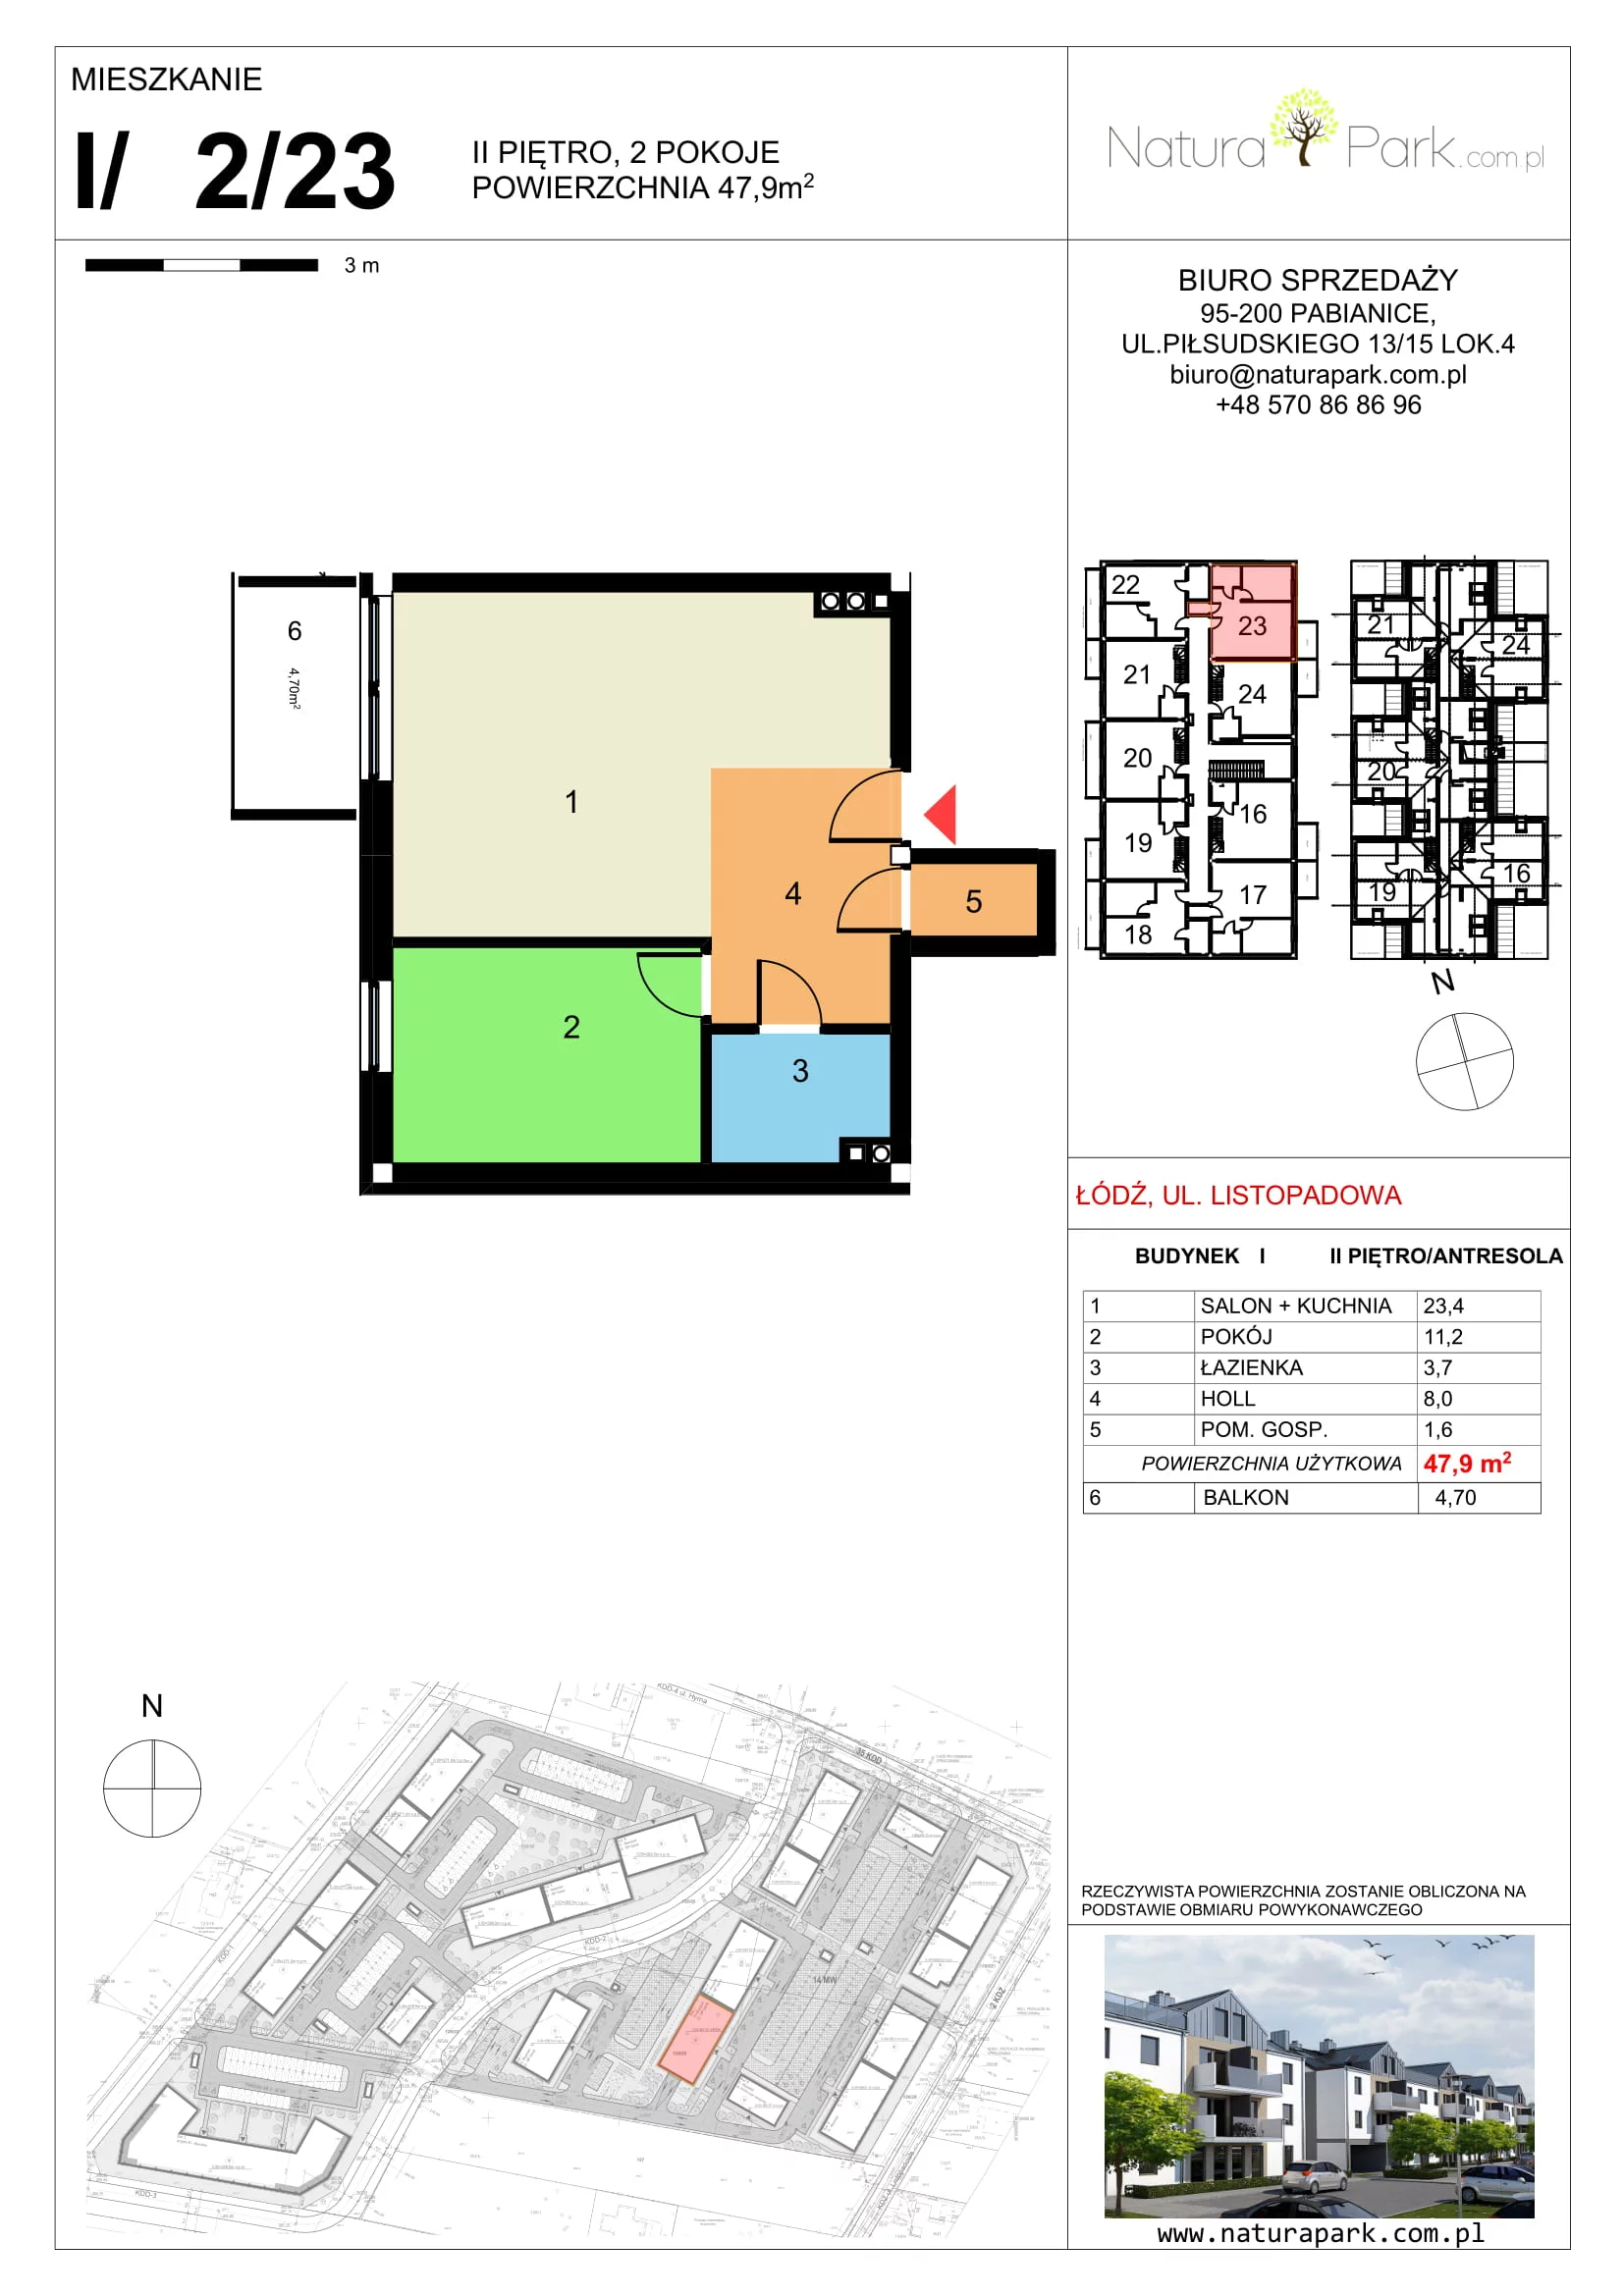 Mieszkanie 47,90 m², piętro 2, oferta nr I/2/23, Natura Park, Łódź, Widzew, Dolina Łódki, ul. Listopadowa